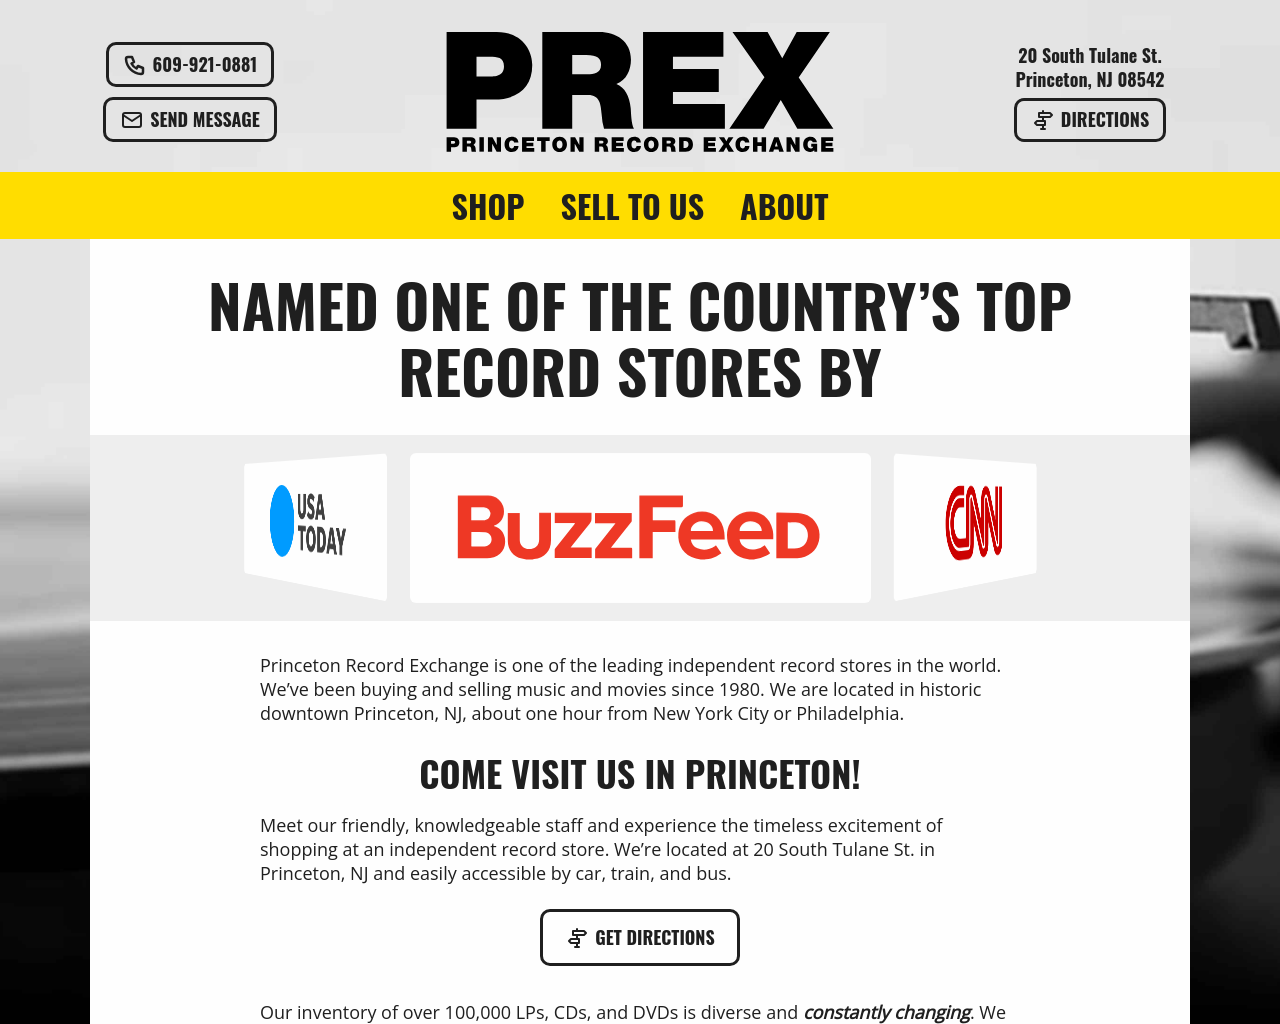 prex.com